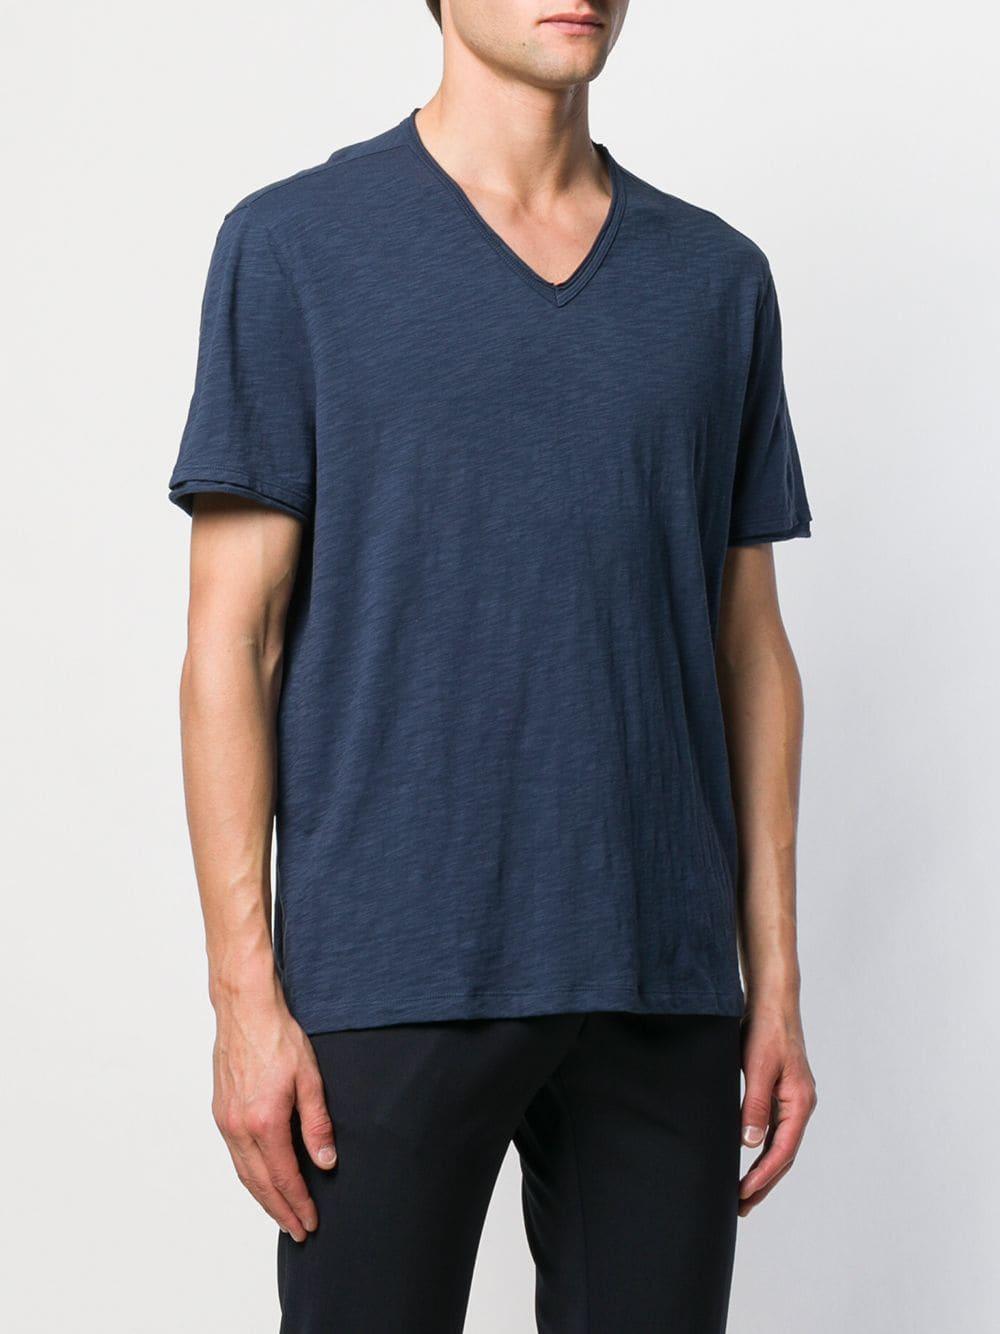 John Varvatos Cotton Plain V-neck T-shirt in Blue for Men - Lyst